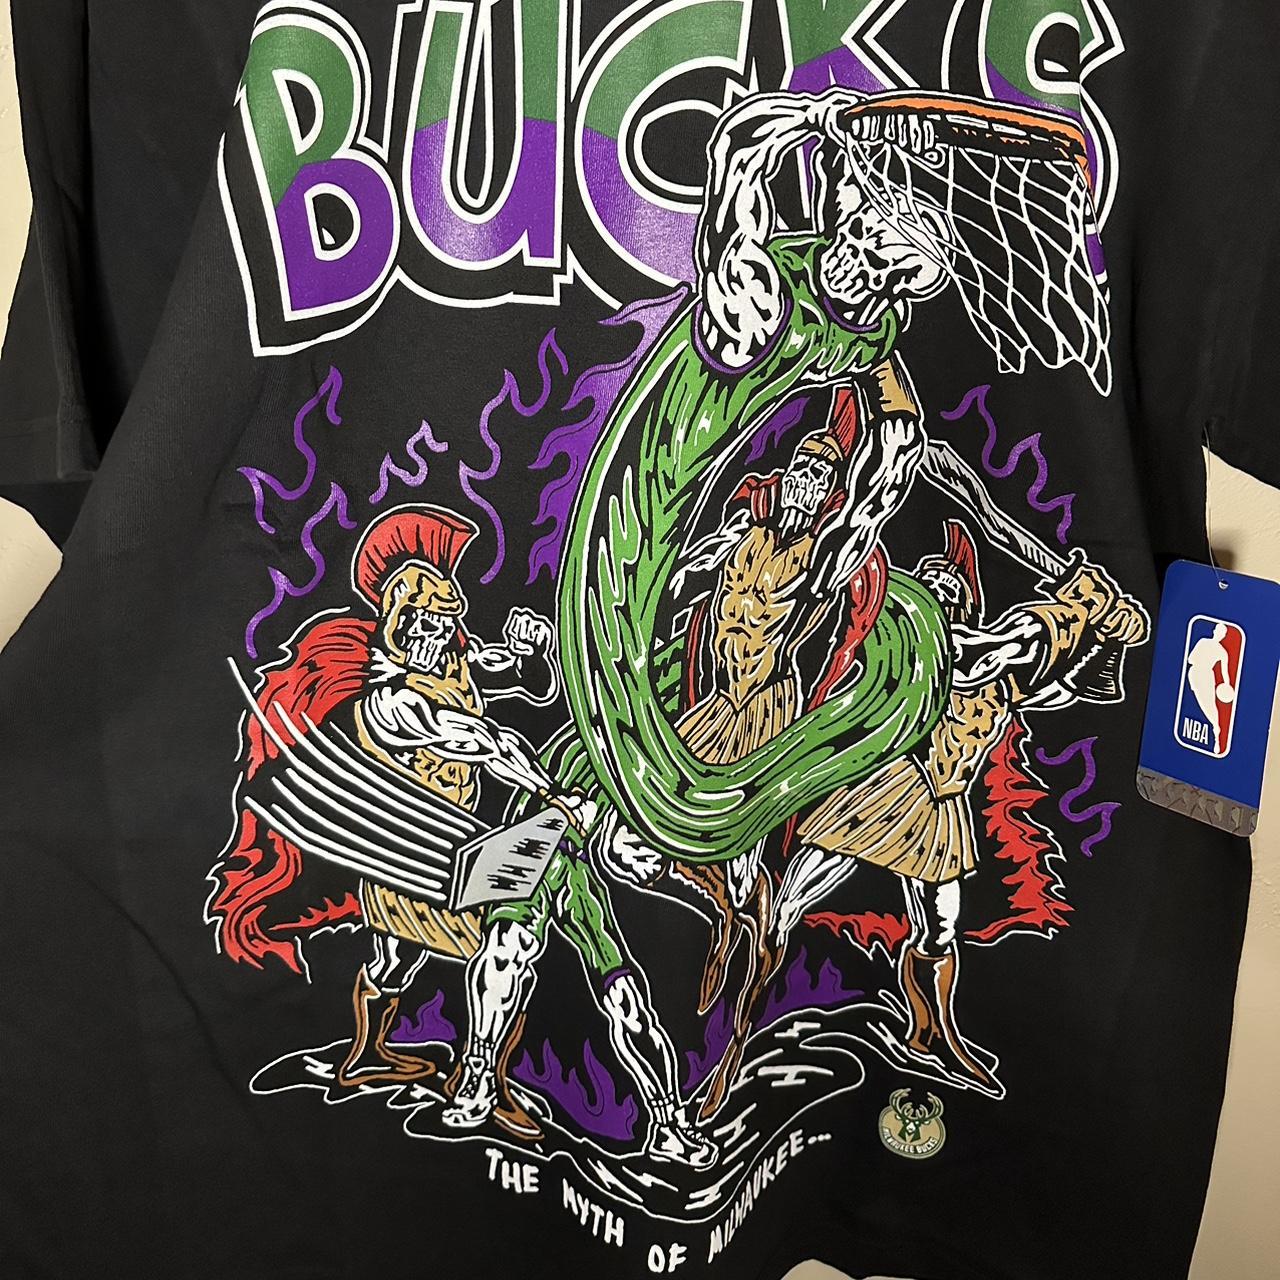 Warren Lotas Milwaukee Bucks NBA T-Shirt